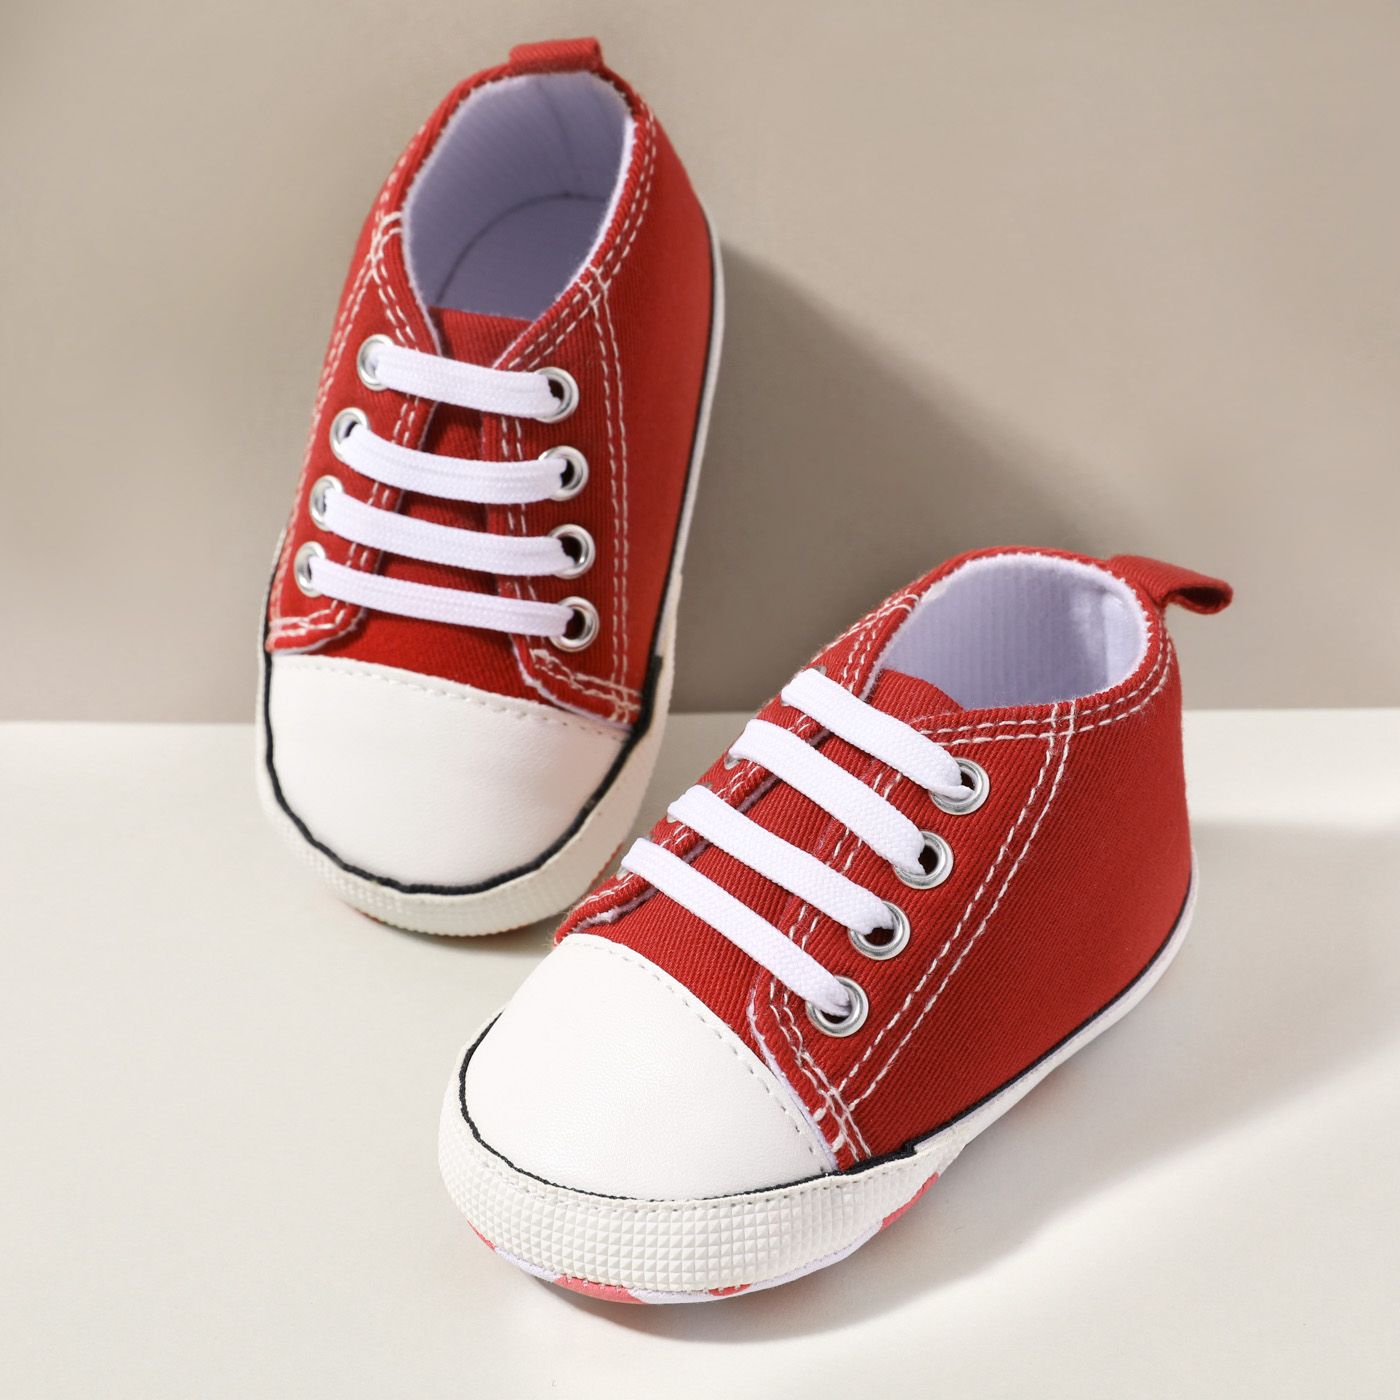 Chaussures De Marche Simples à Lacets Solides Pour Bébés / Tout-petits